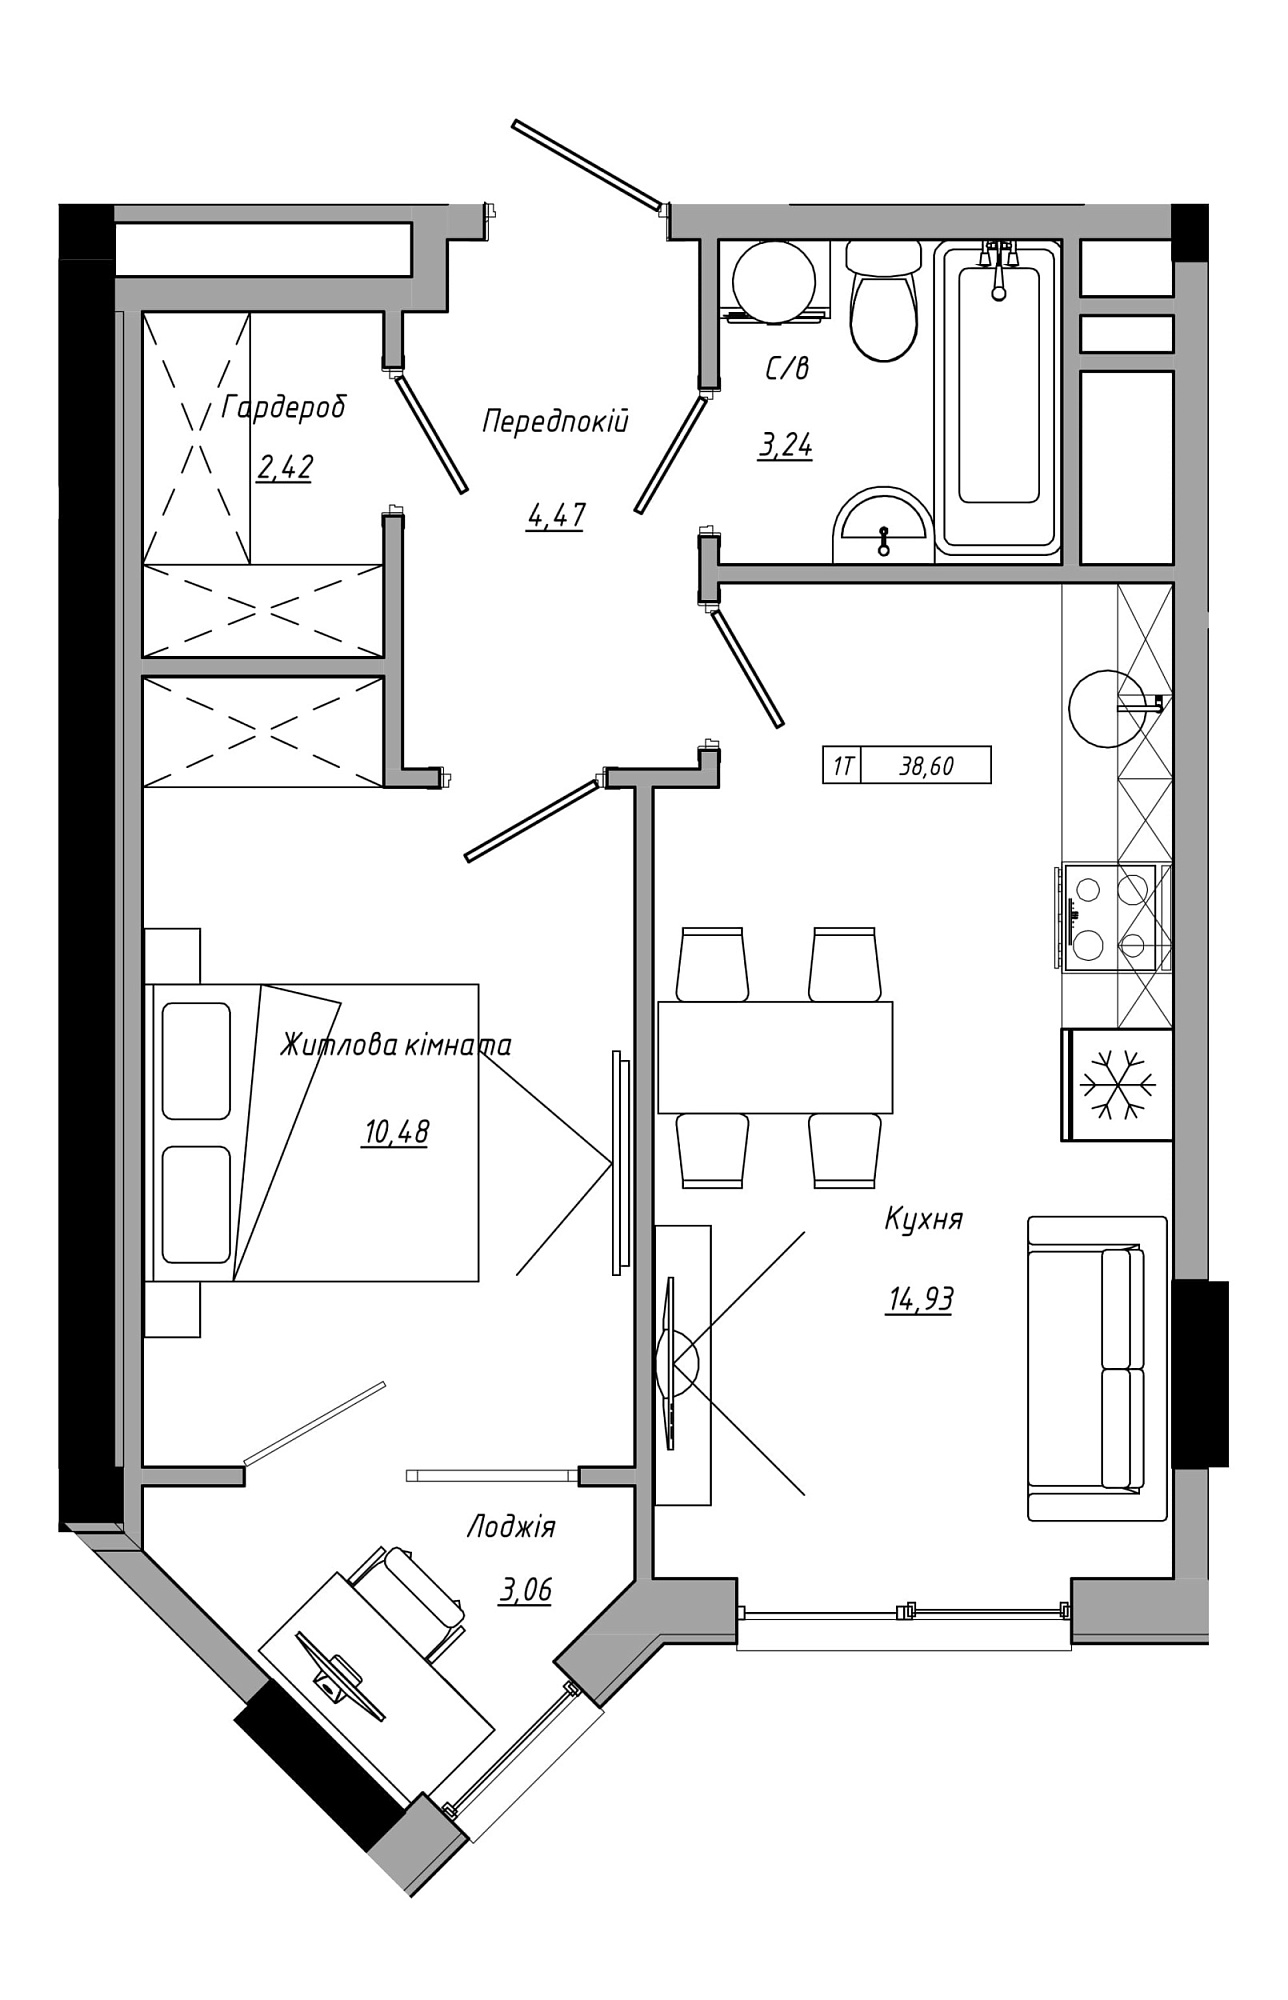 Планування 1-к квартира площею 38.6м2, AB-21-07/00022.